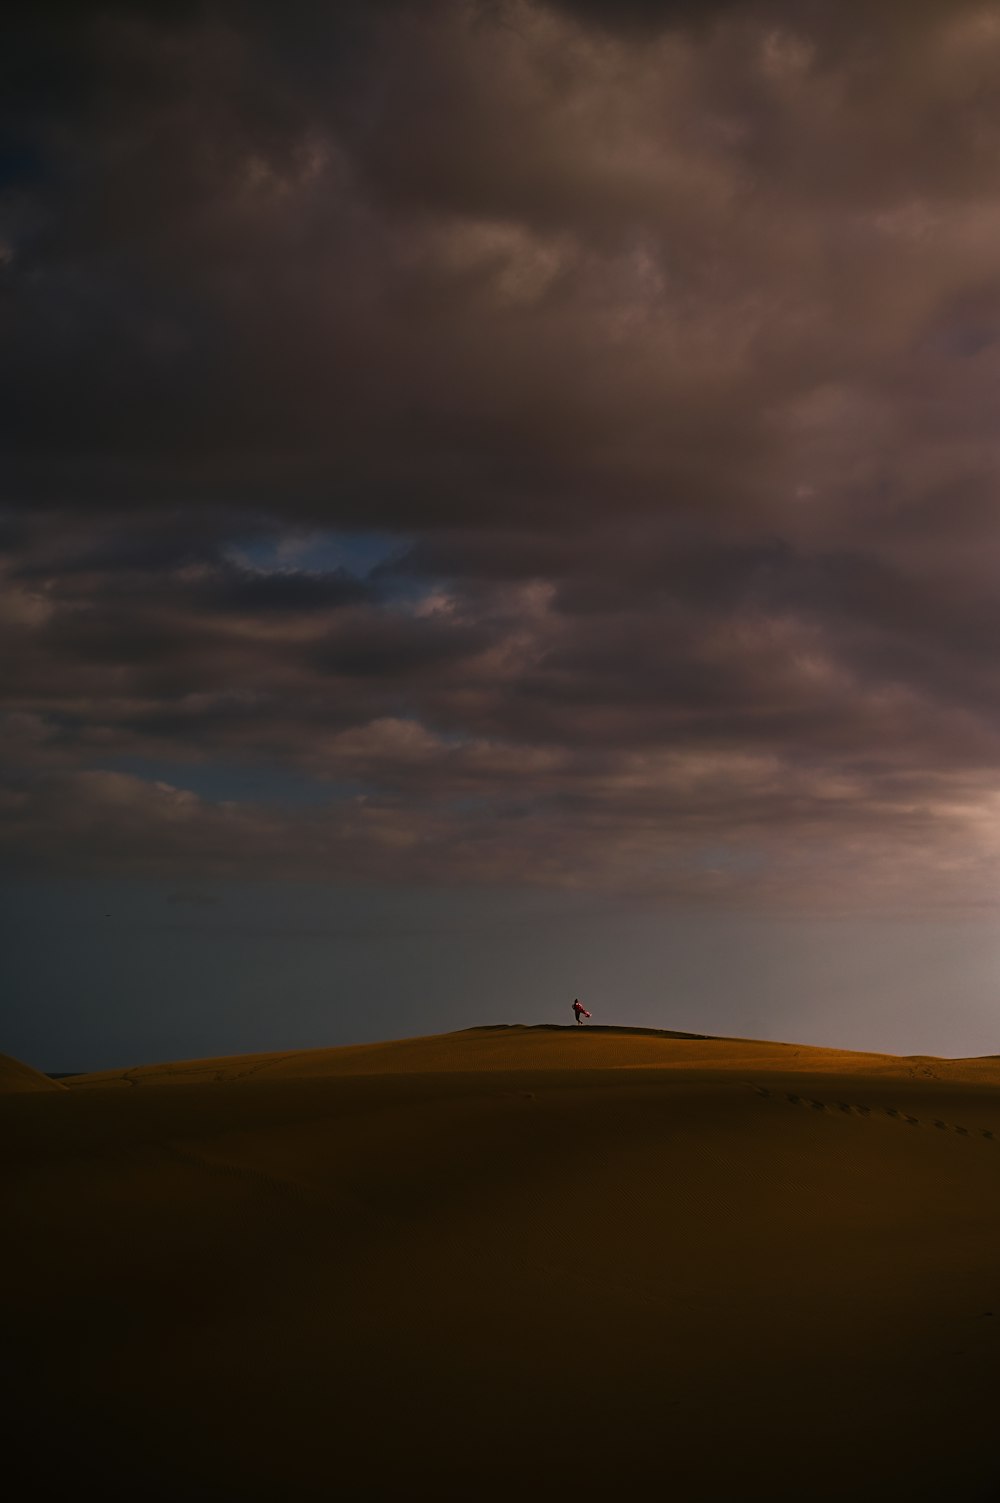 una persona solitaria de pie en la cima de una colina bajo un cielo nublado